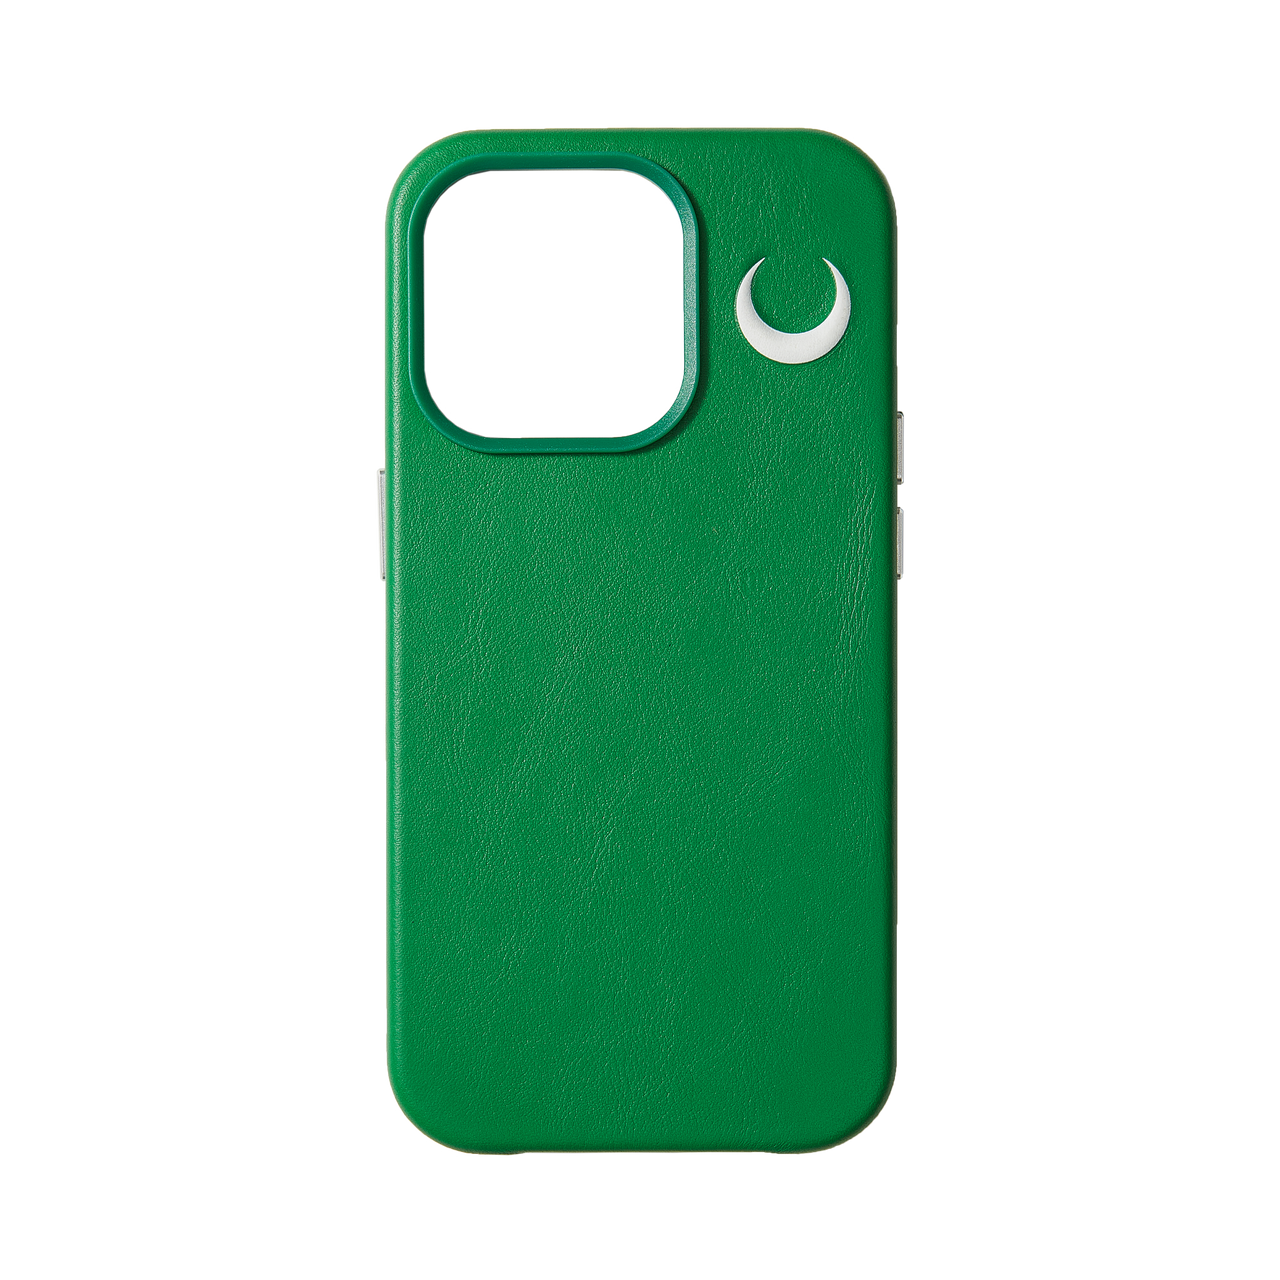 新月 压印图案 绿色 真皮  iphone  保护壳